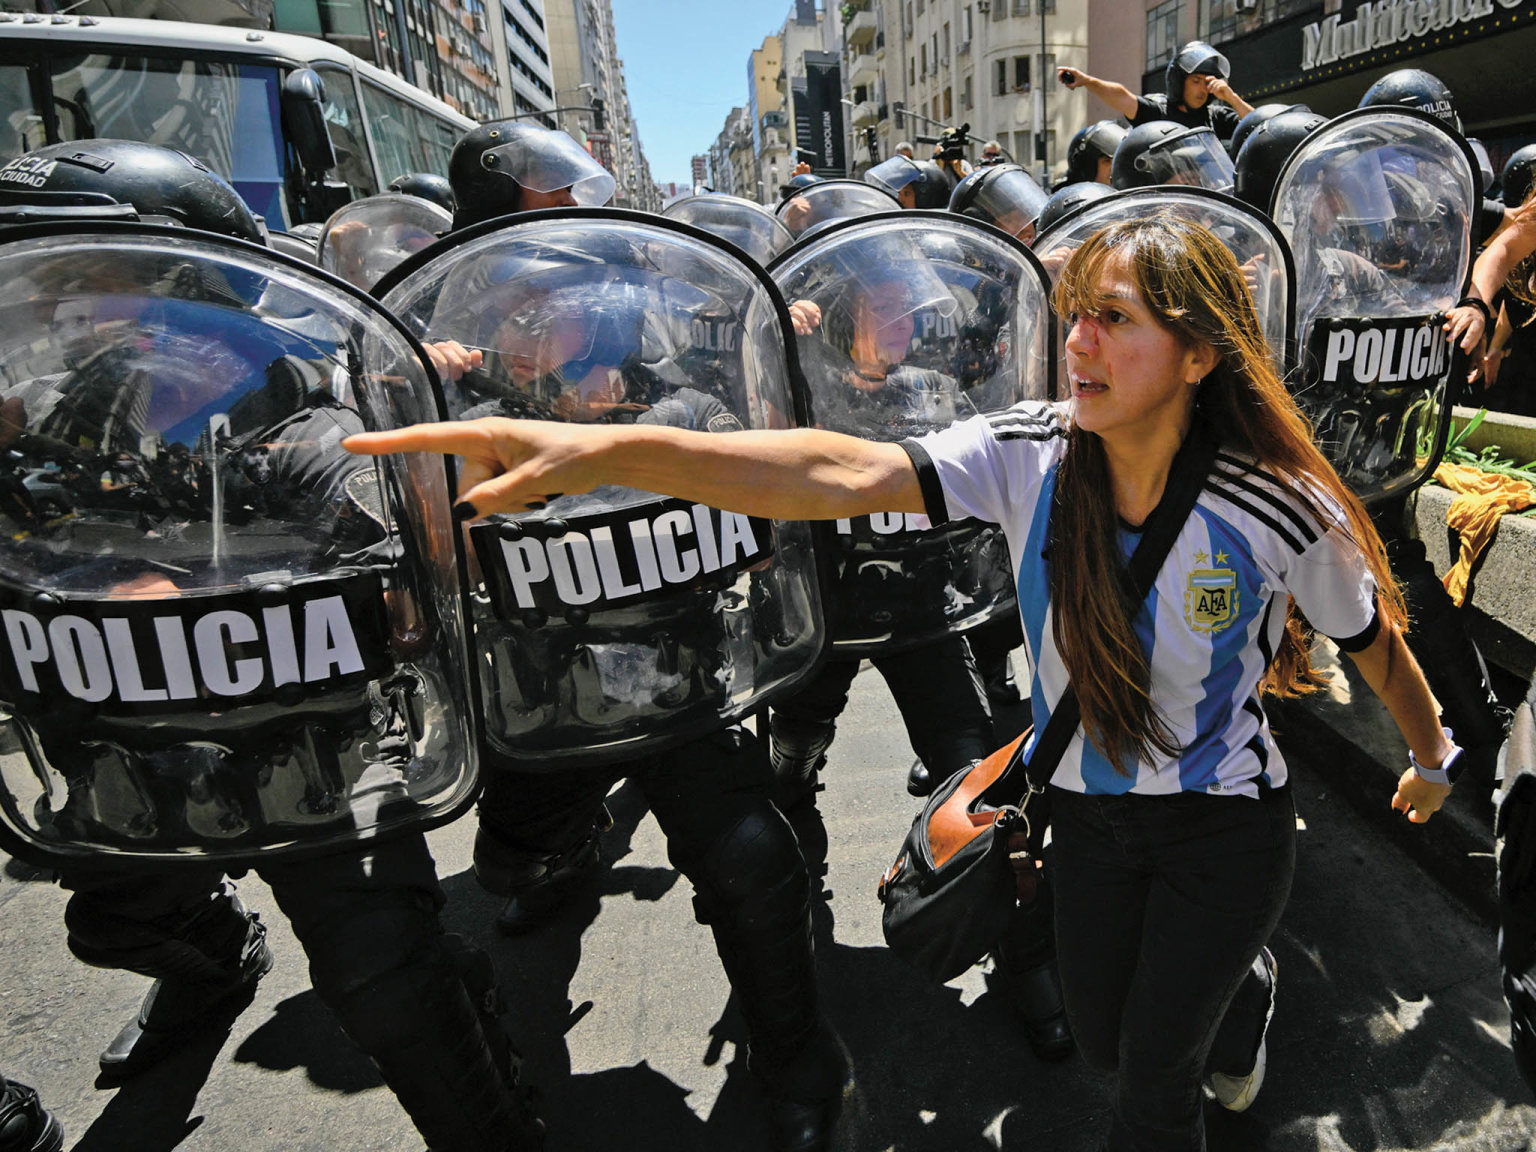 Chystají se protesty Mnozí Argentinci se nechtìjí smíøit s oslabením role státu v ekonomice. Protesty proti novému prezidentovi už probíhají, pøíští týden bude generální stávka.